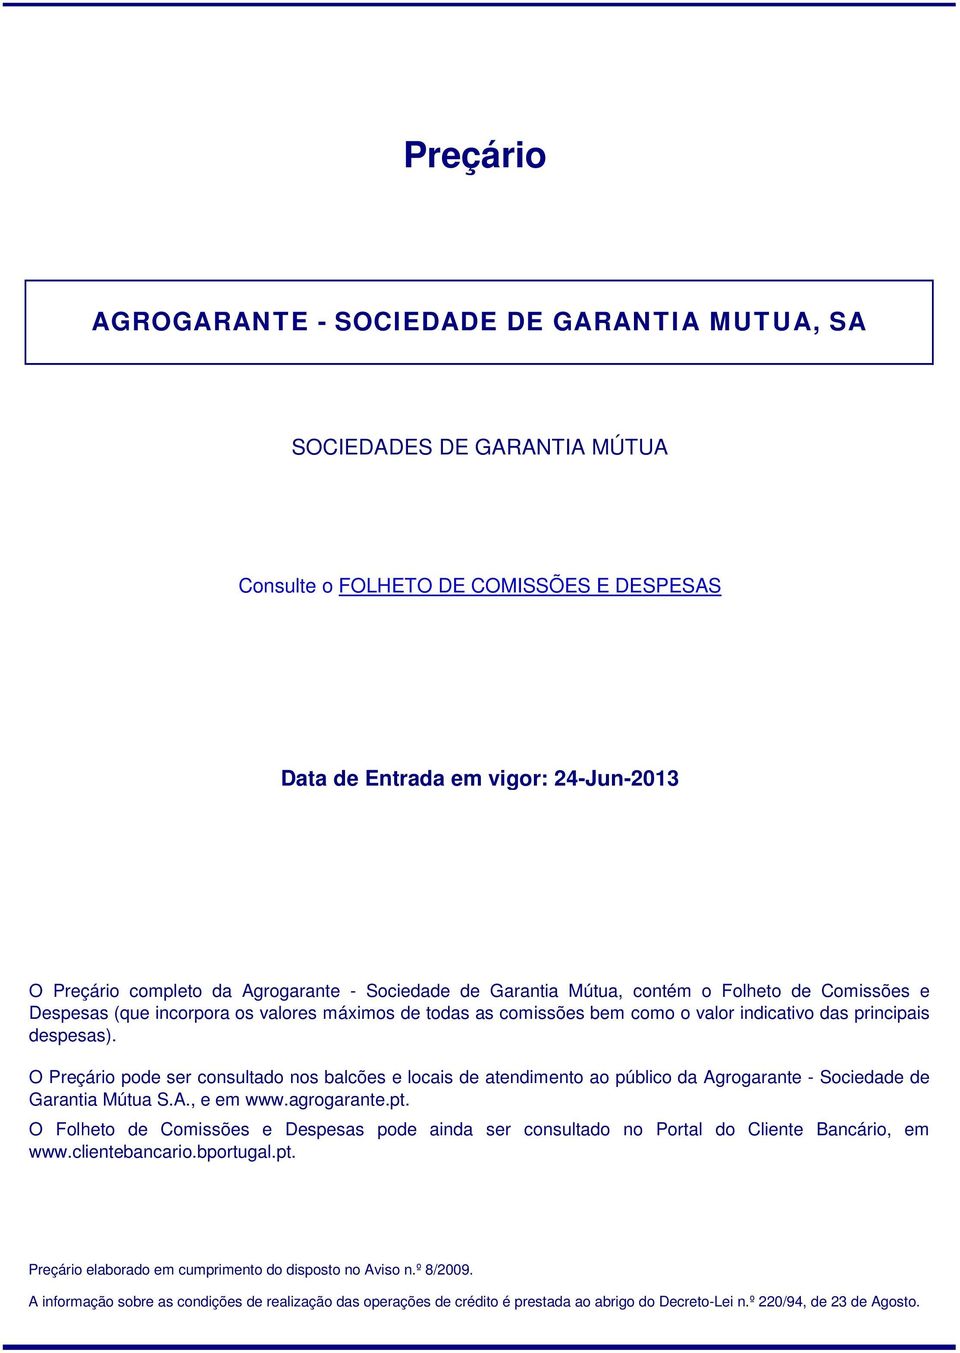 O Preçário pode ser consultado nos balcões e locais de atendimento ao público da Agrogarante - Sociedade de Garantia Mútua S.A., e em www.agrogarante.pt.